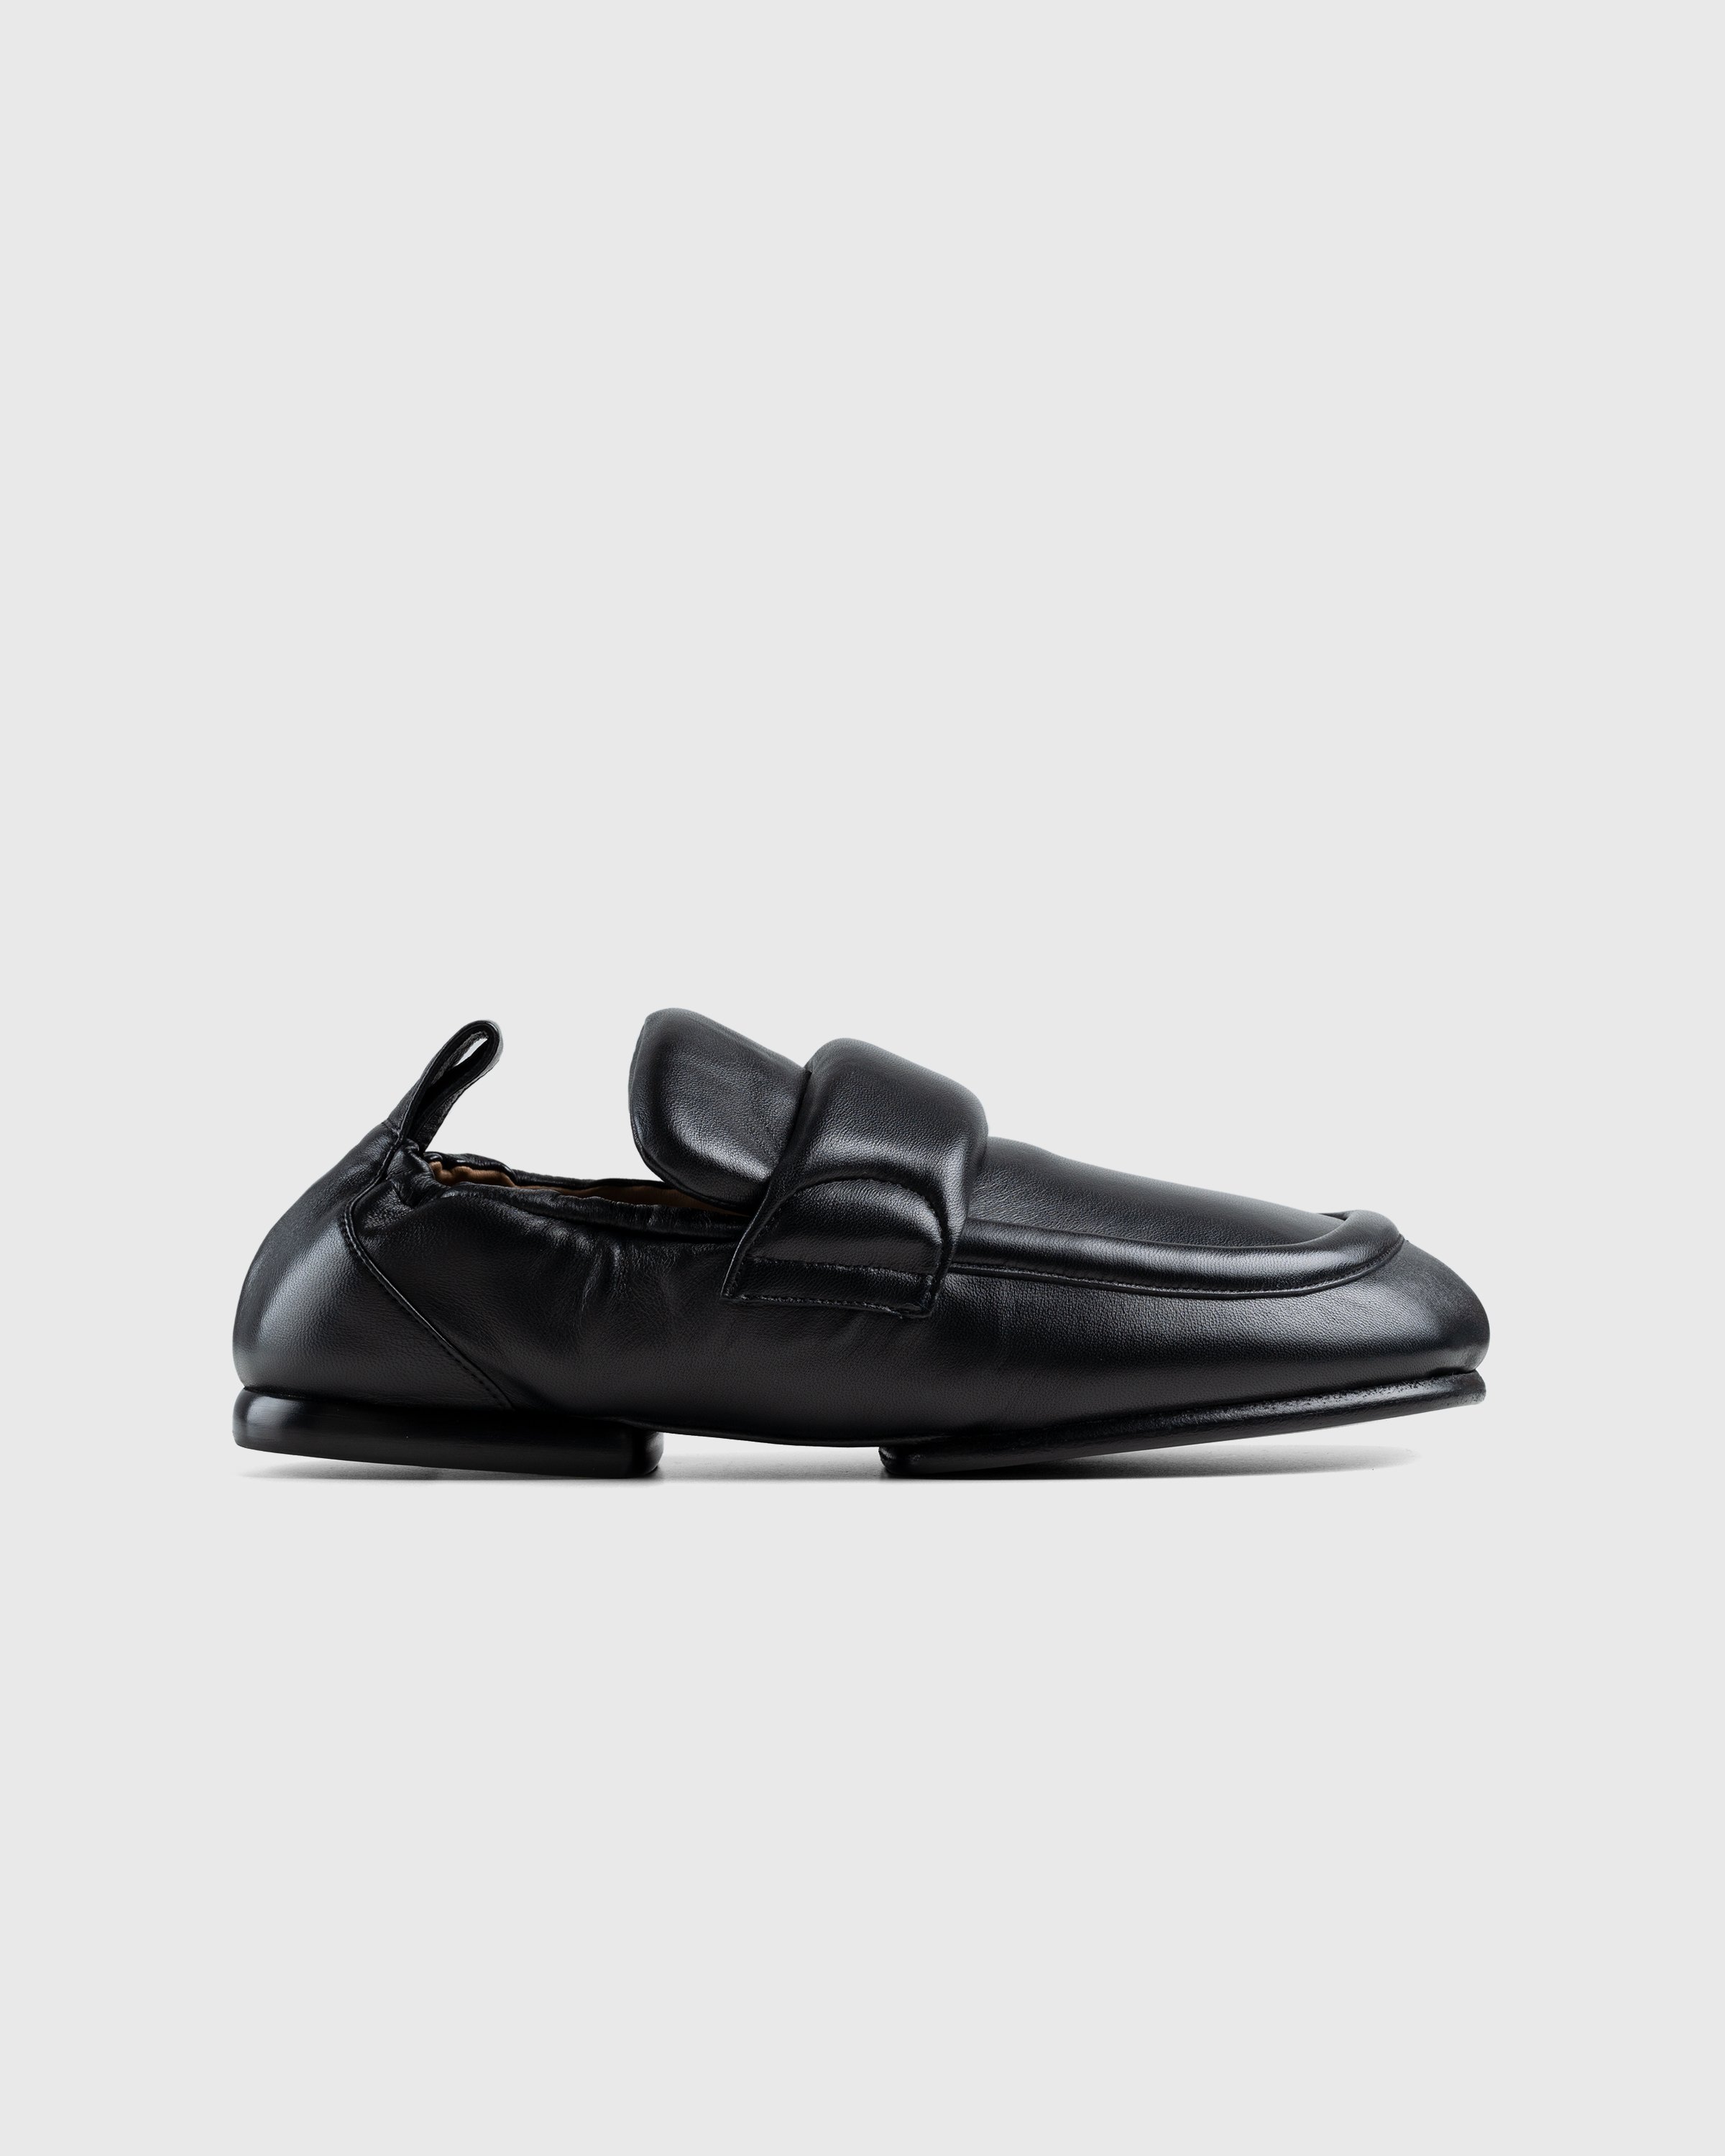 Dries van Noten - Padded Loafers - Footwear - Black - Image 1